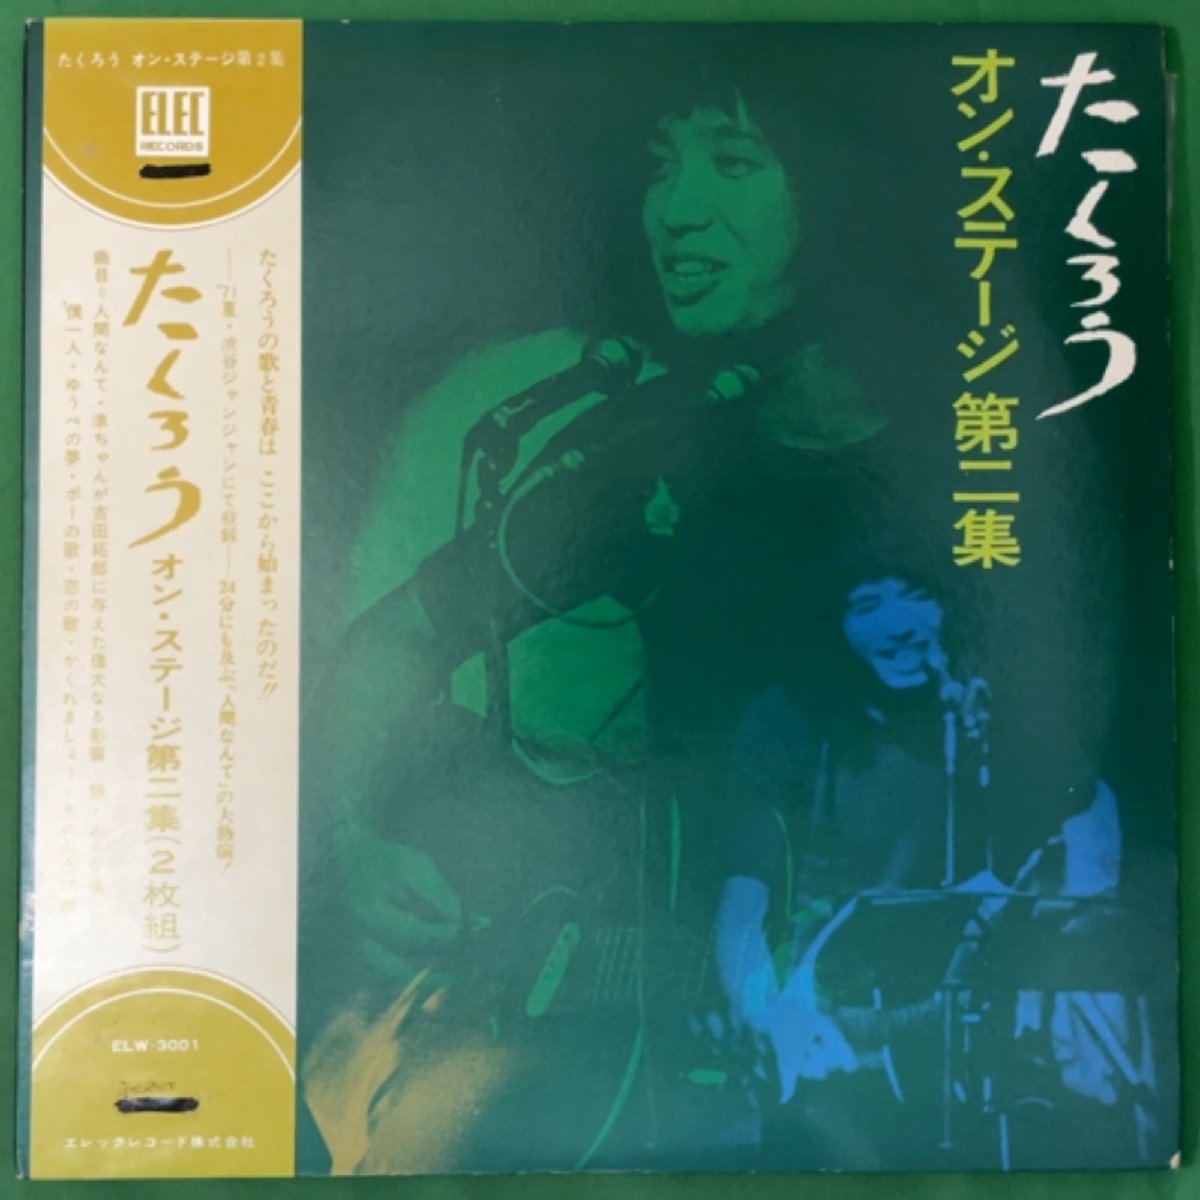 吉田拓郎 レコード LP アナログ盤 11種セット よしだたくろう 今はまだ人生を語らず 元気です 大いなる人 人間なんて_画像2